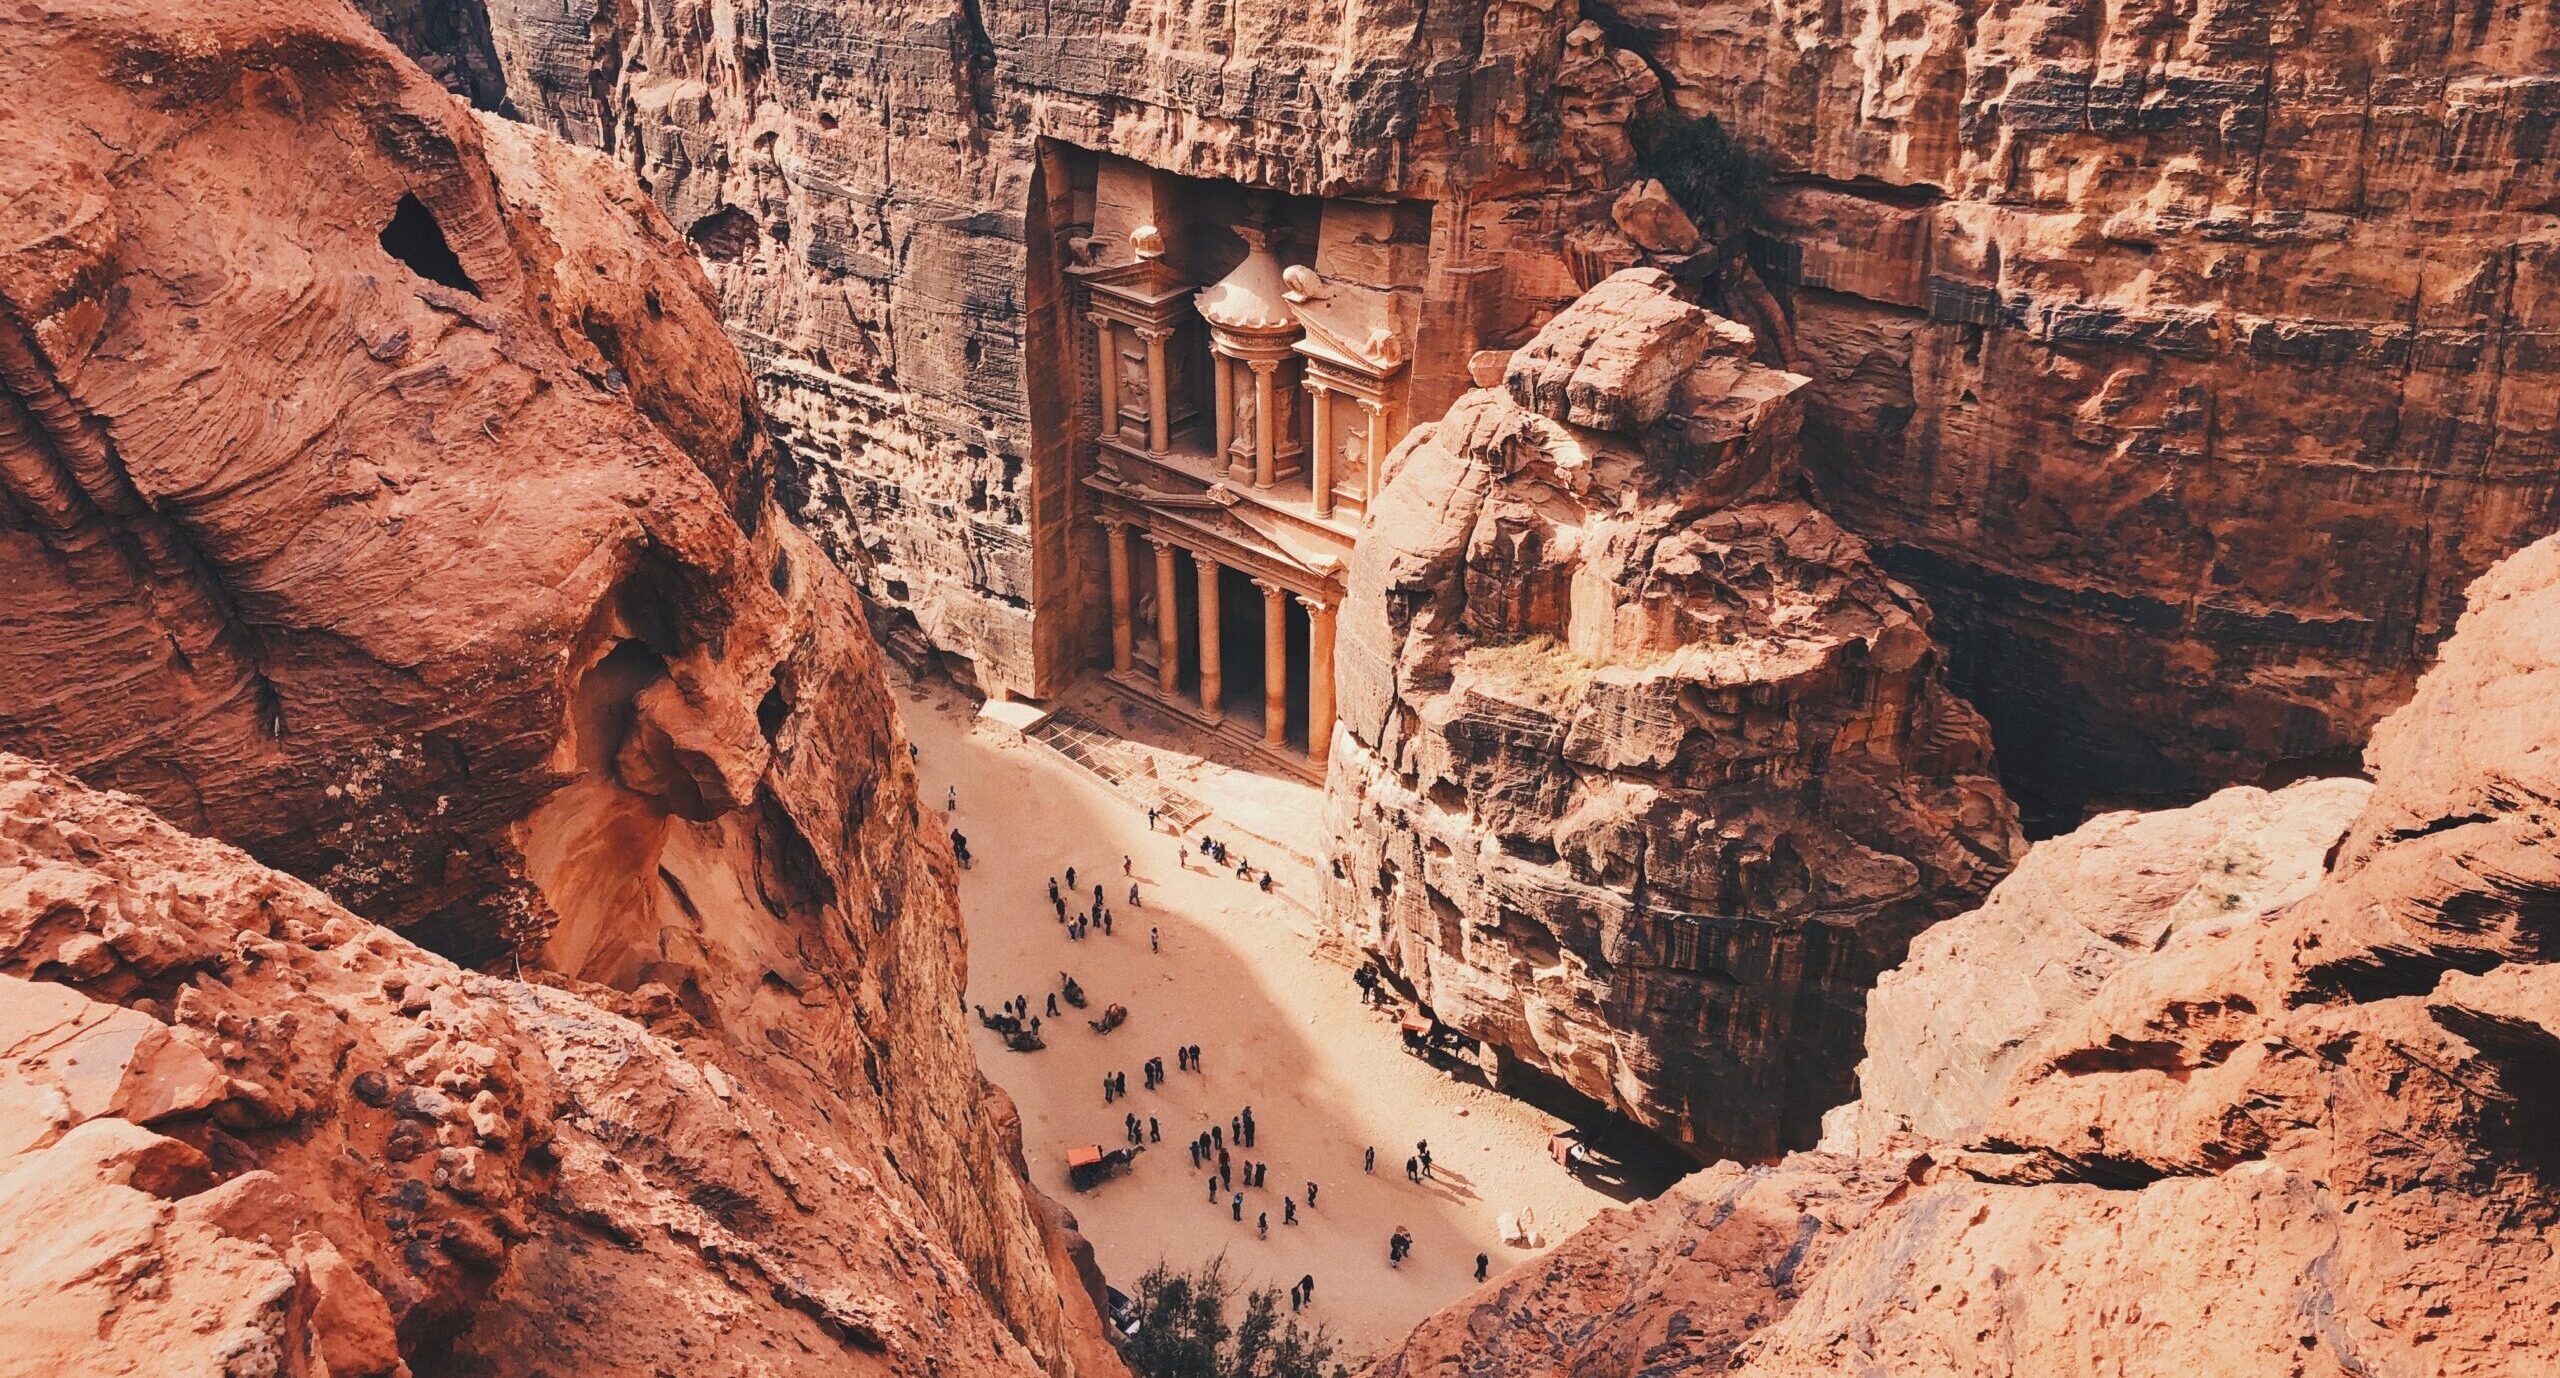 Visit the Petra of Jordan in our Jordan Tour.